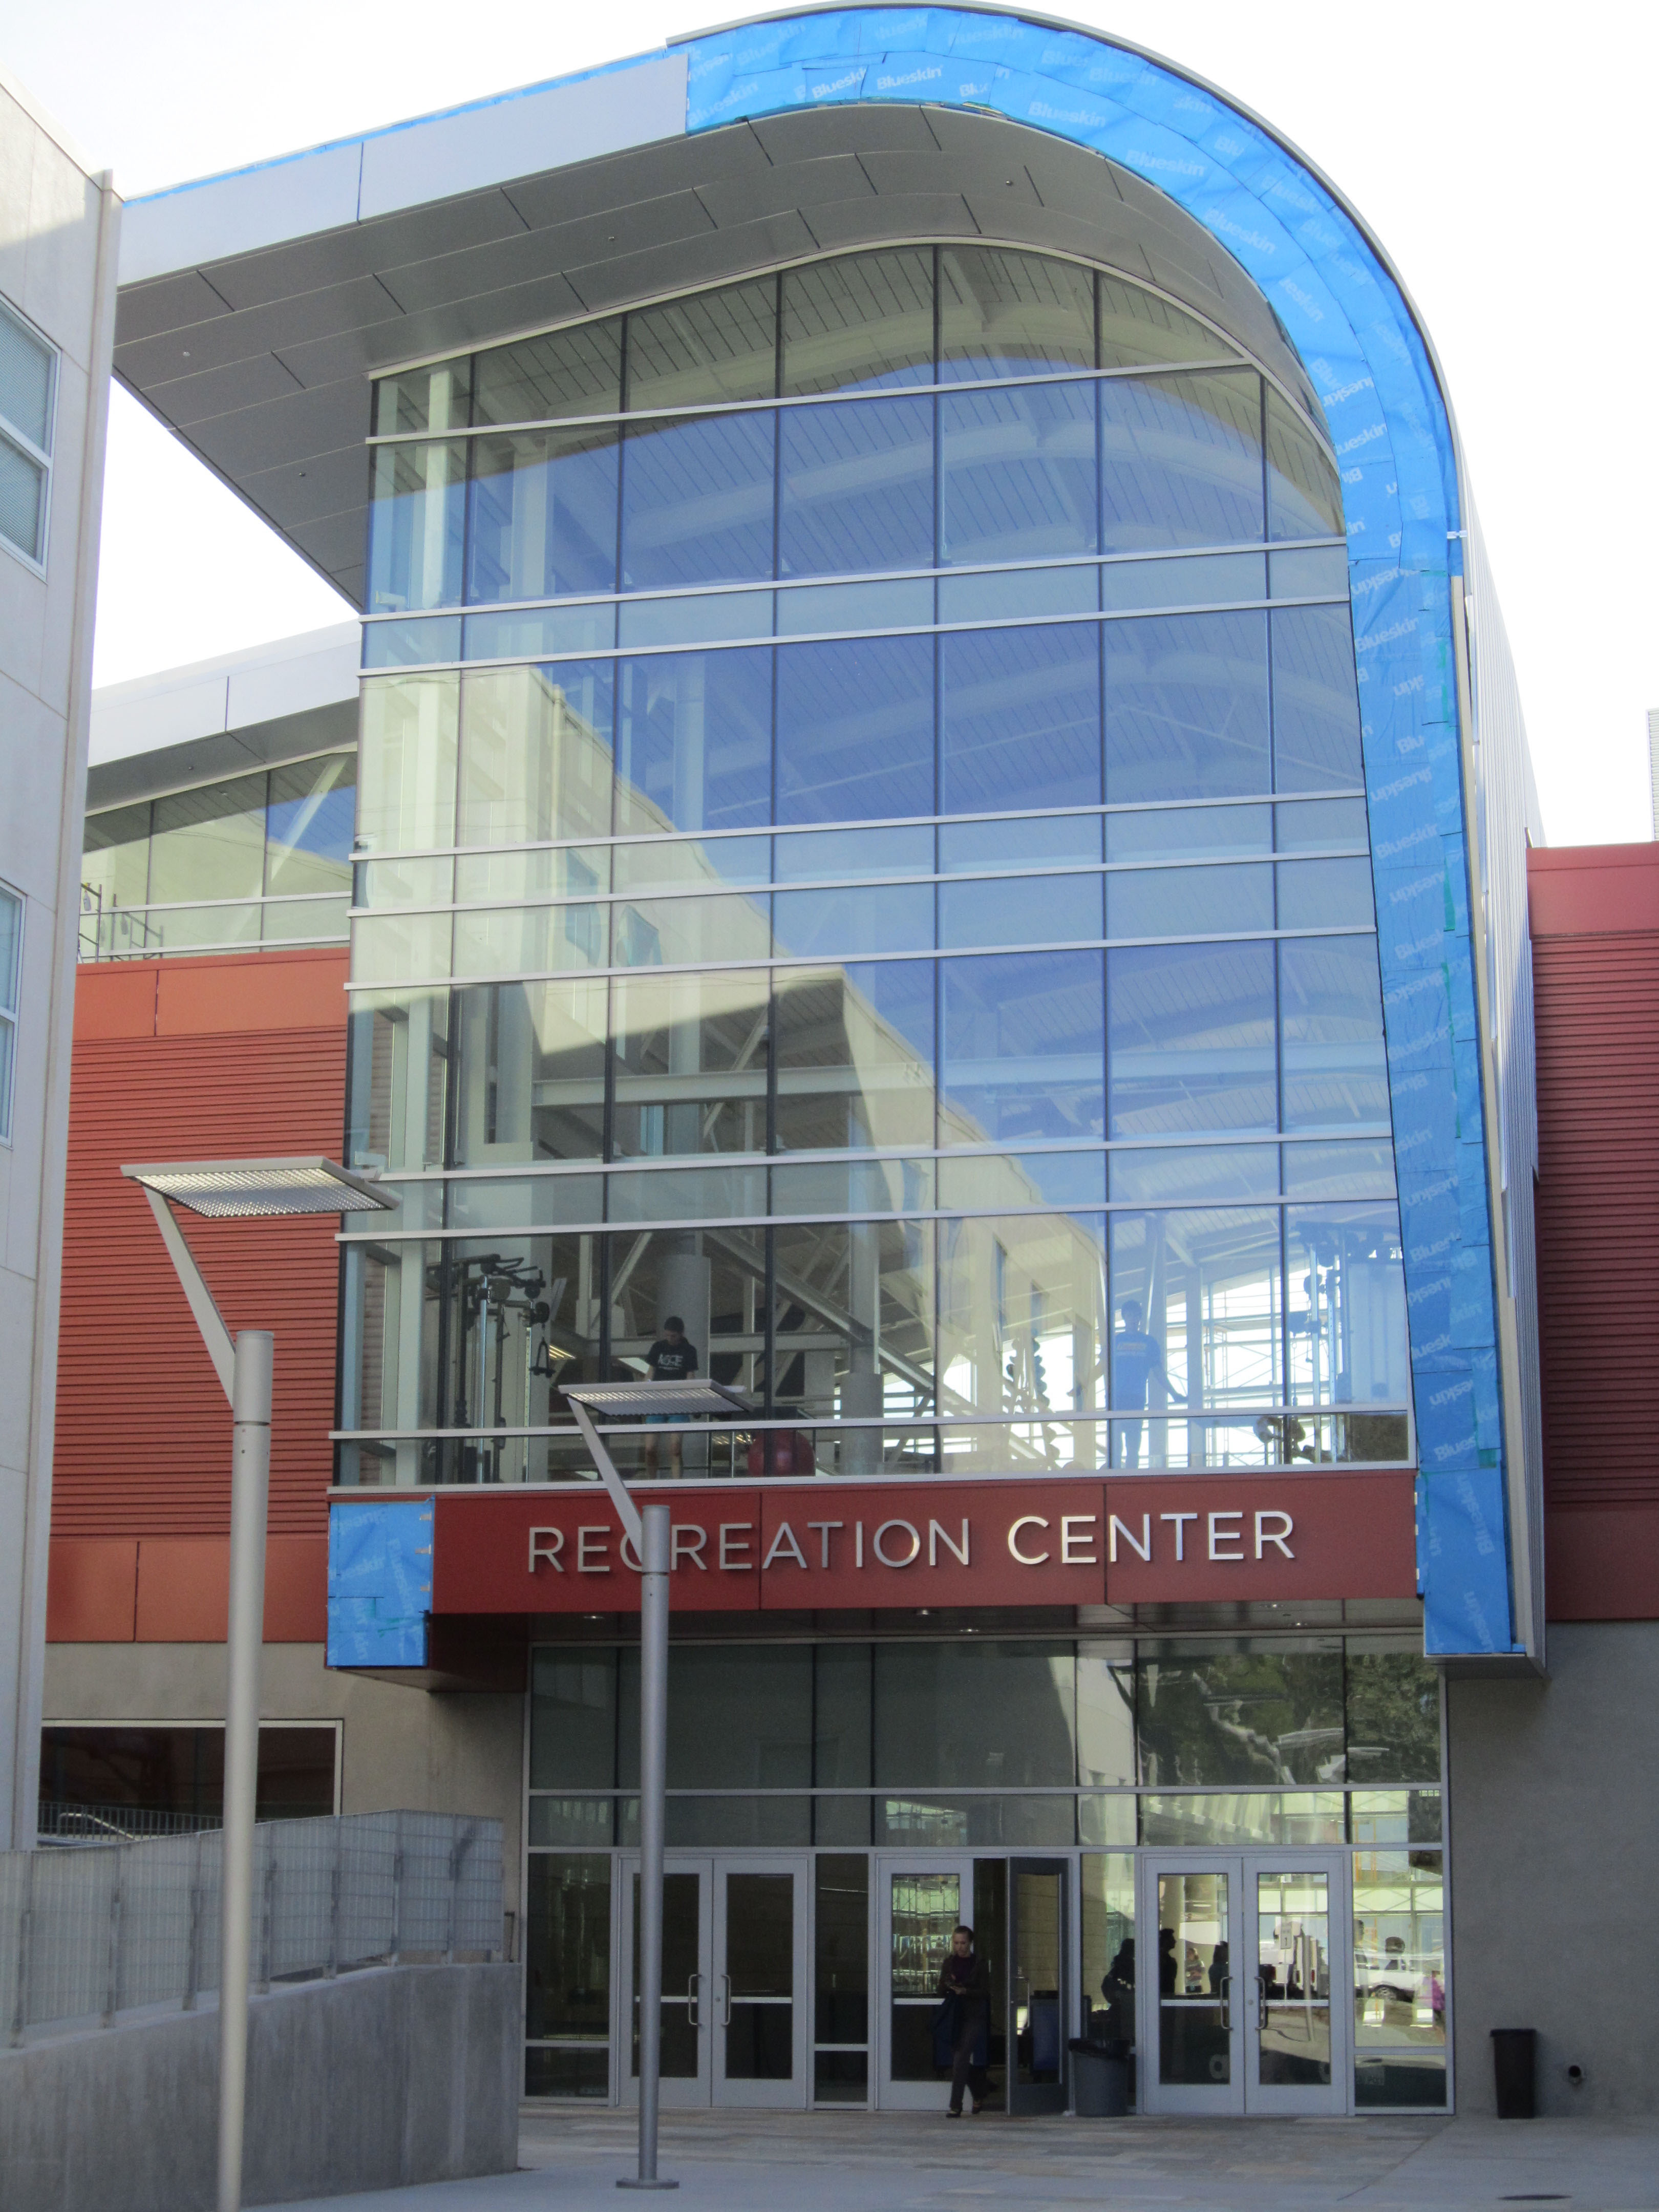 Eingang zum Recreation Center der Cal Poly